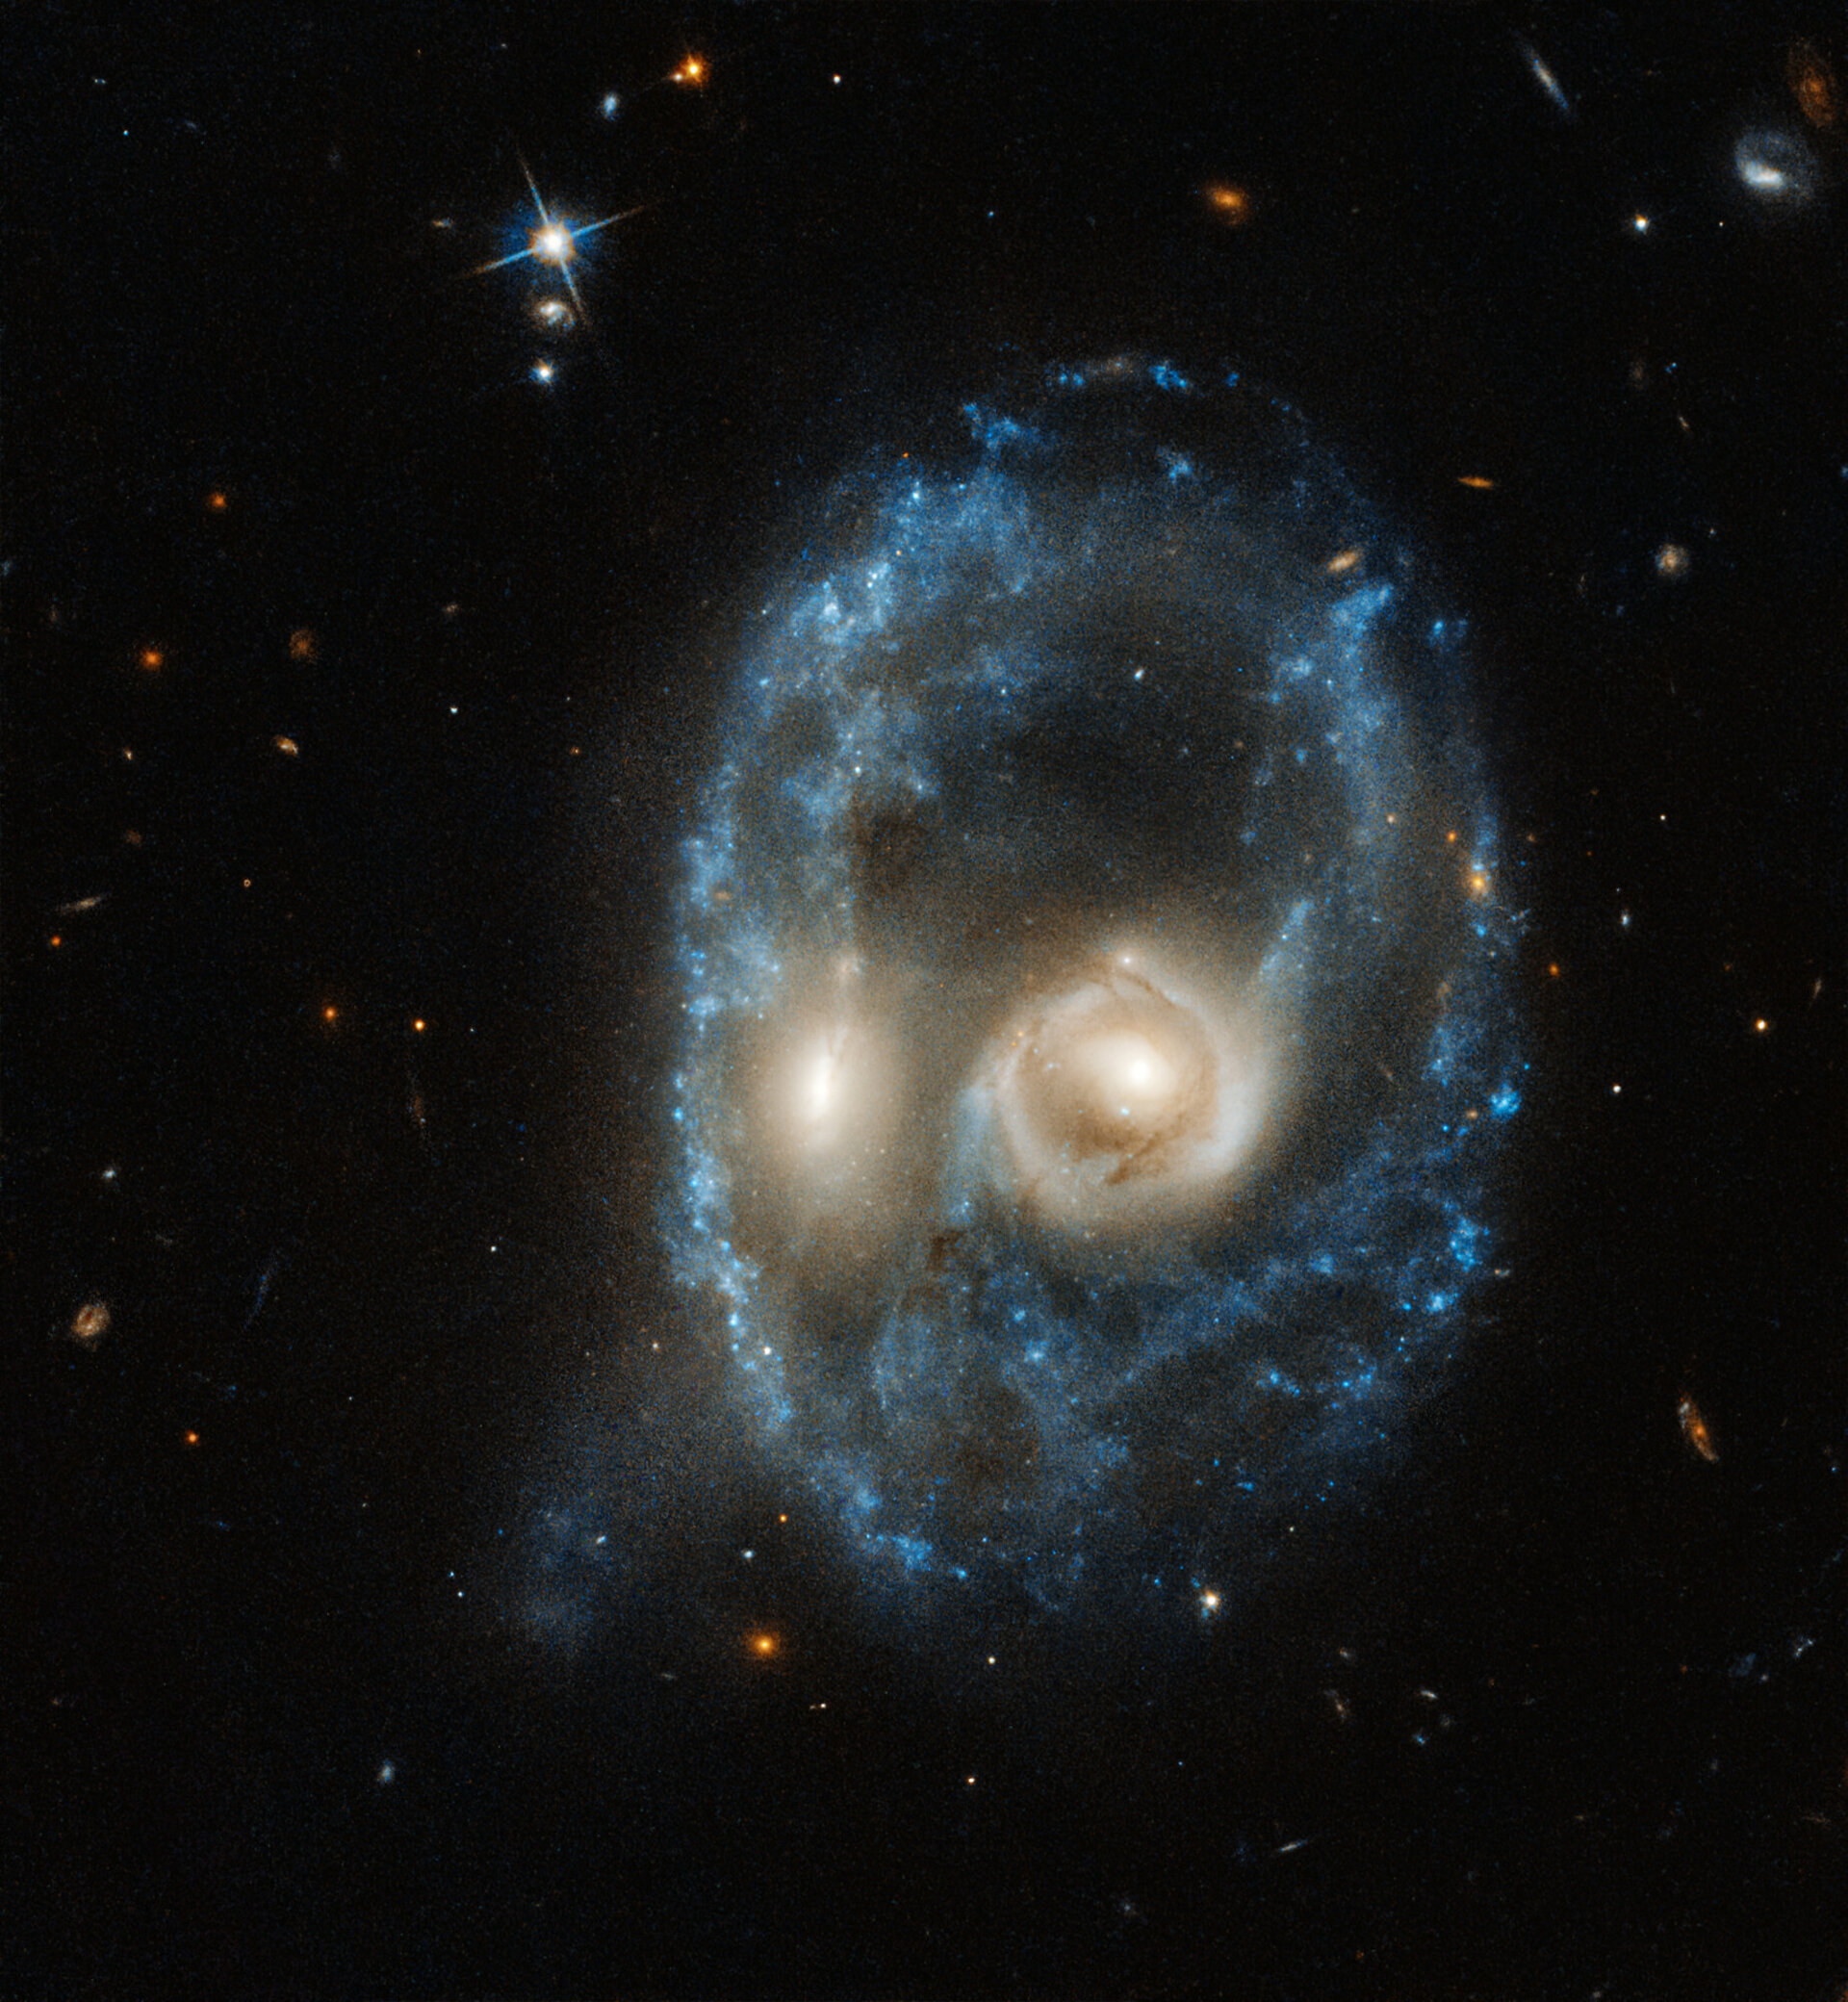 Hubble captures cosmic face